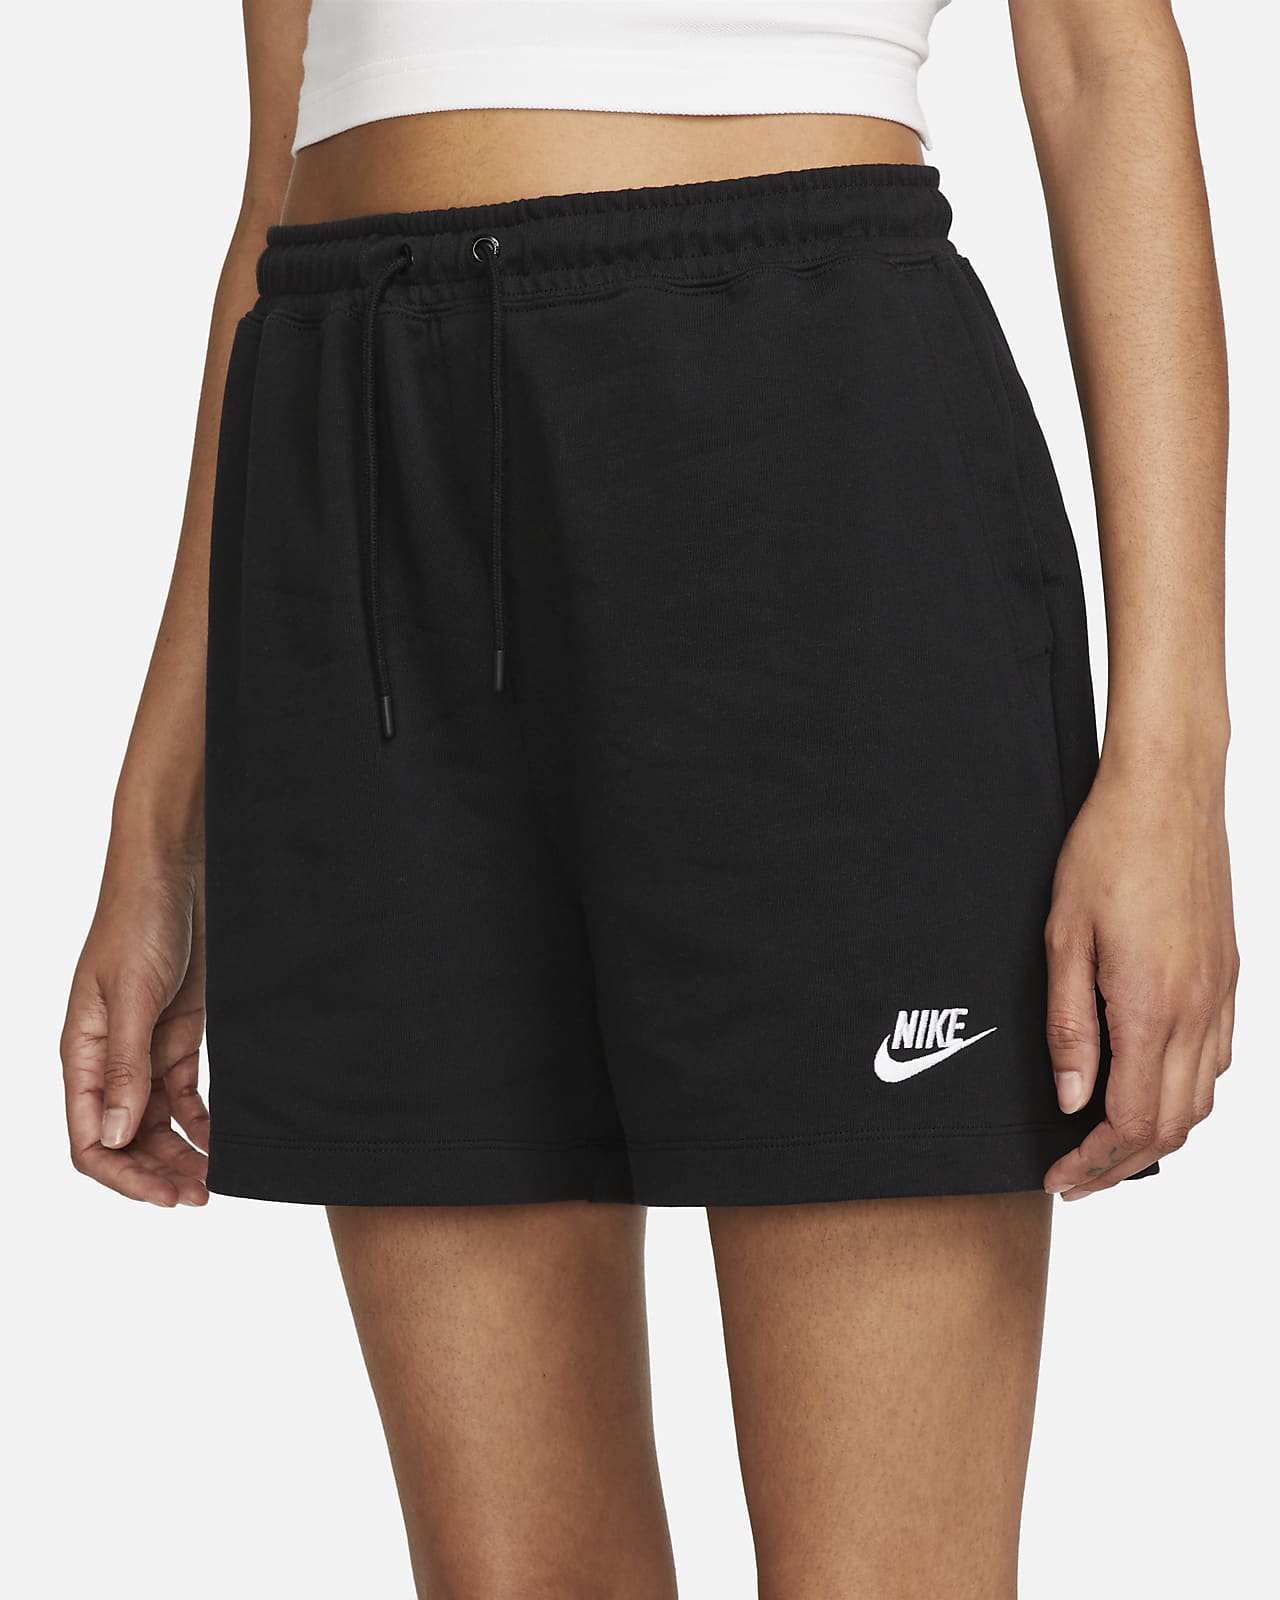 nike womens jersey shorts